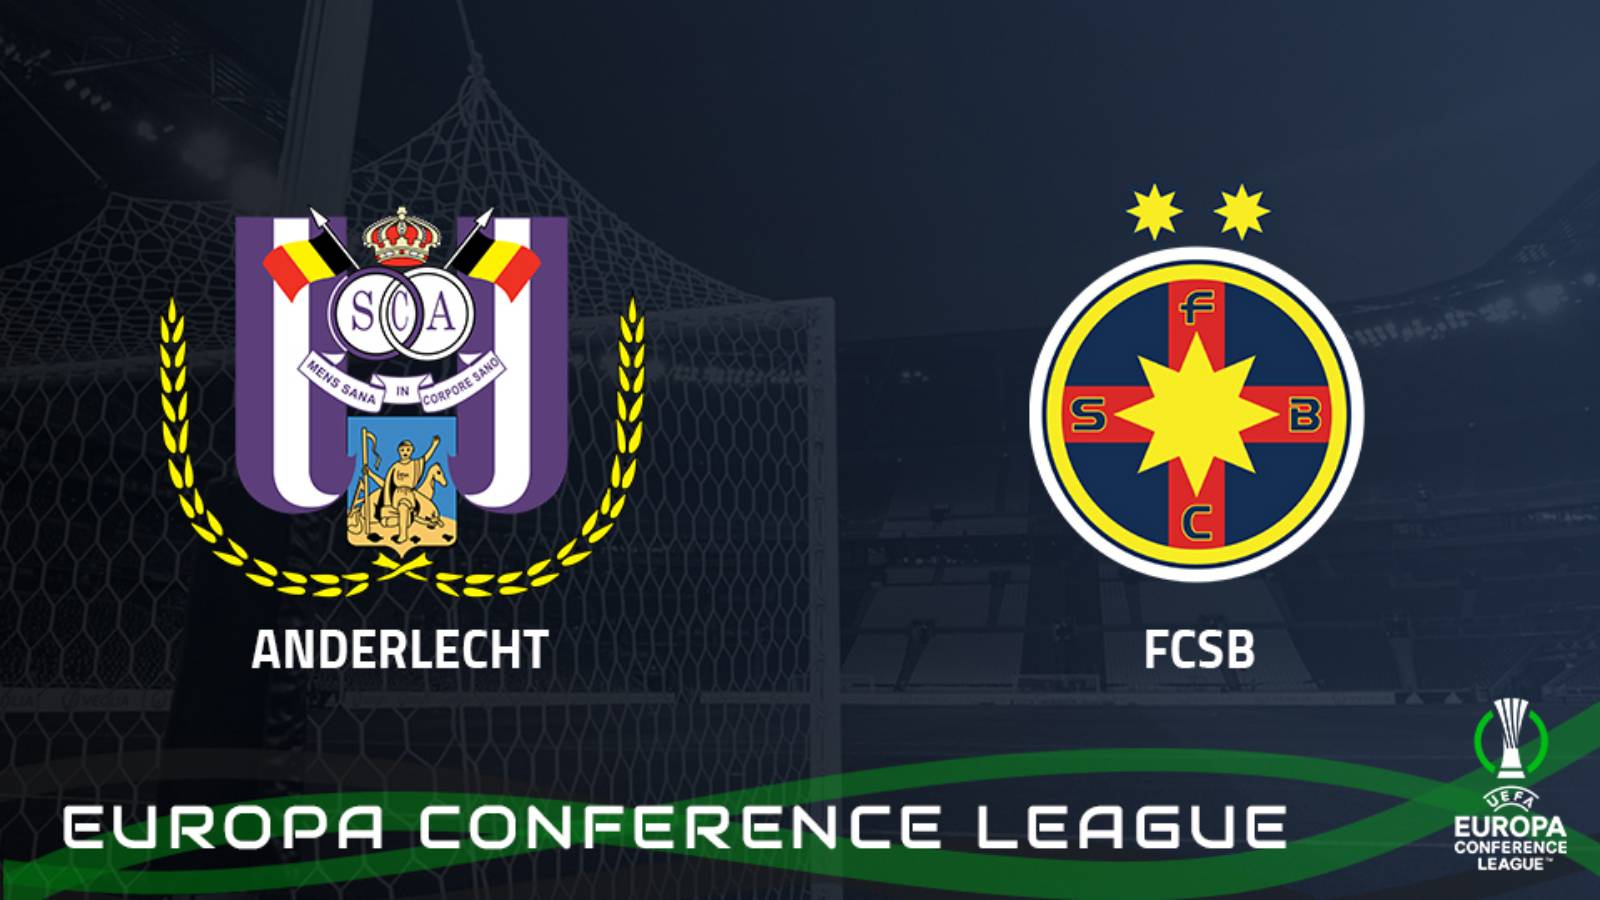 ANDERLECHT – FCSB LIVE PRO ARENA Liga Konferencyjna UEFA